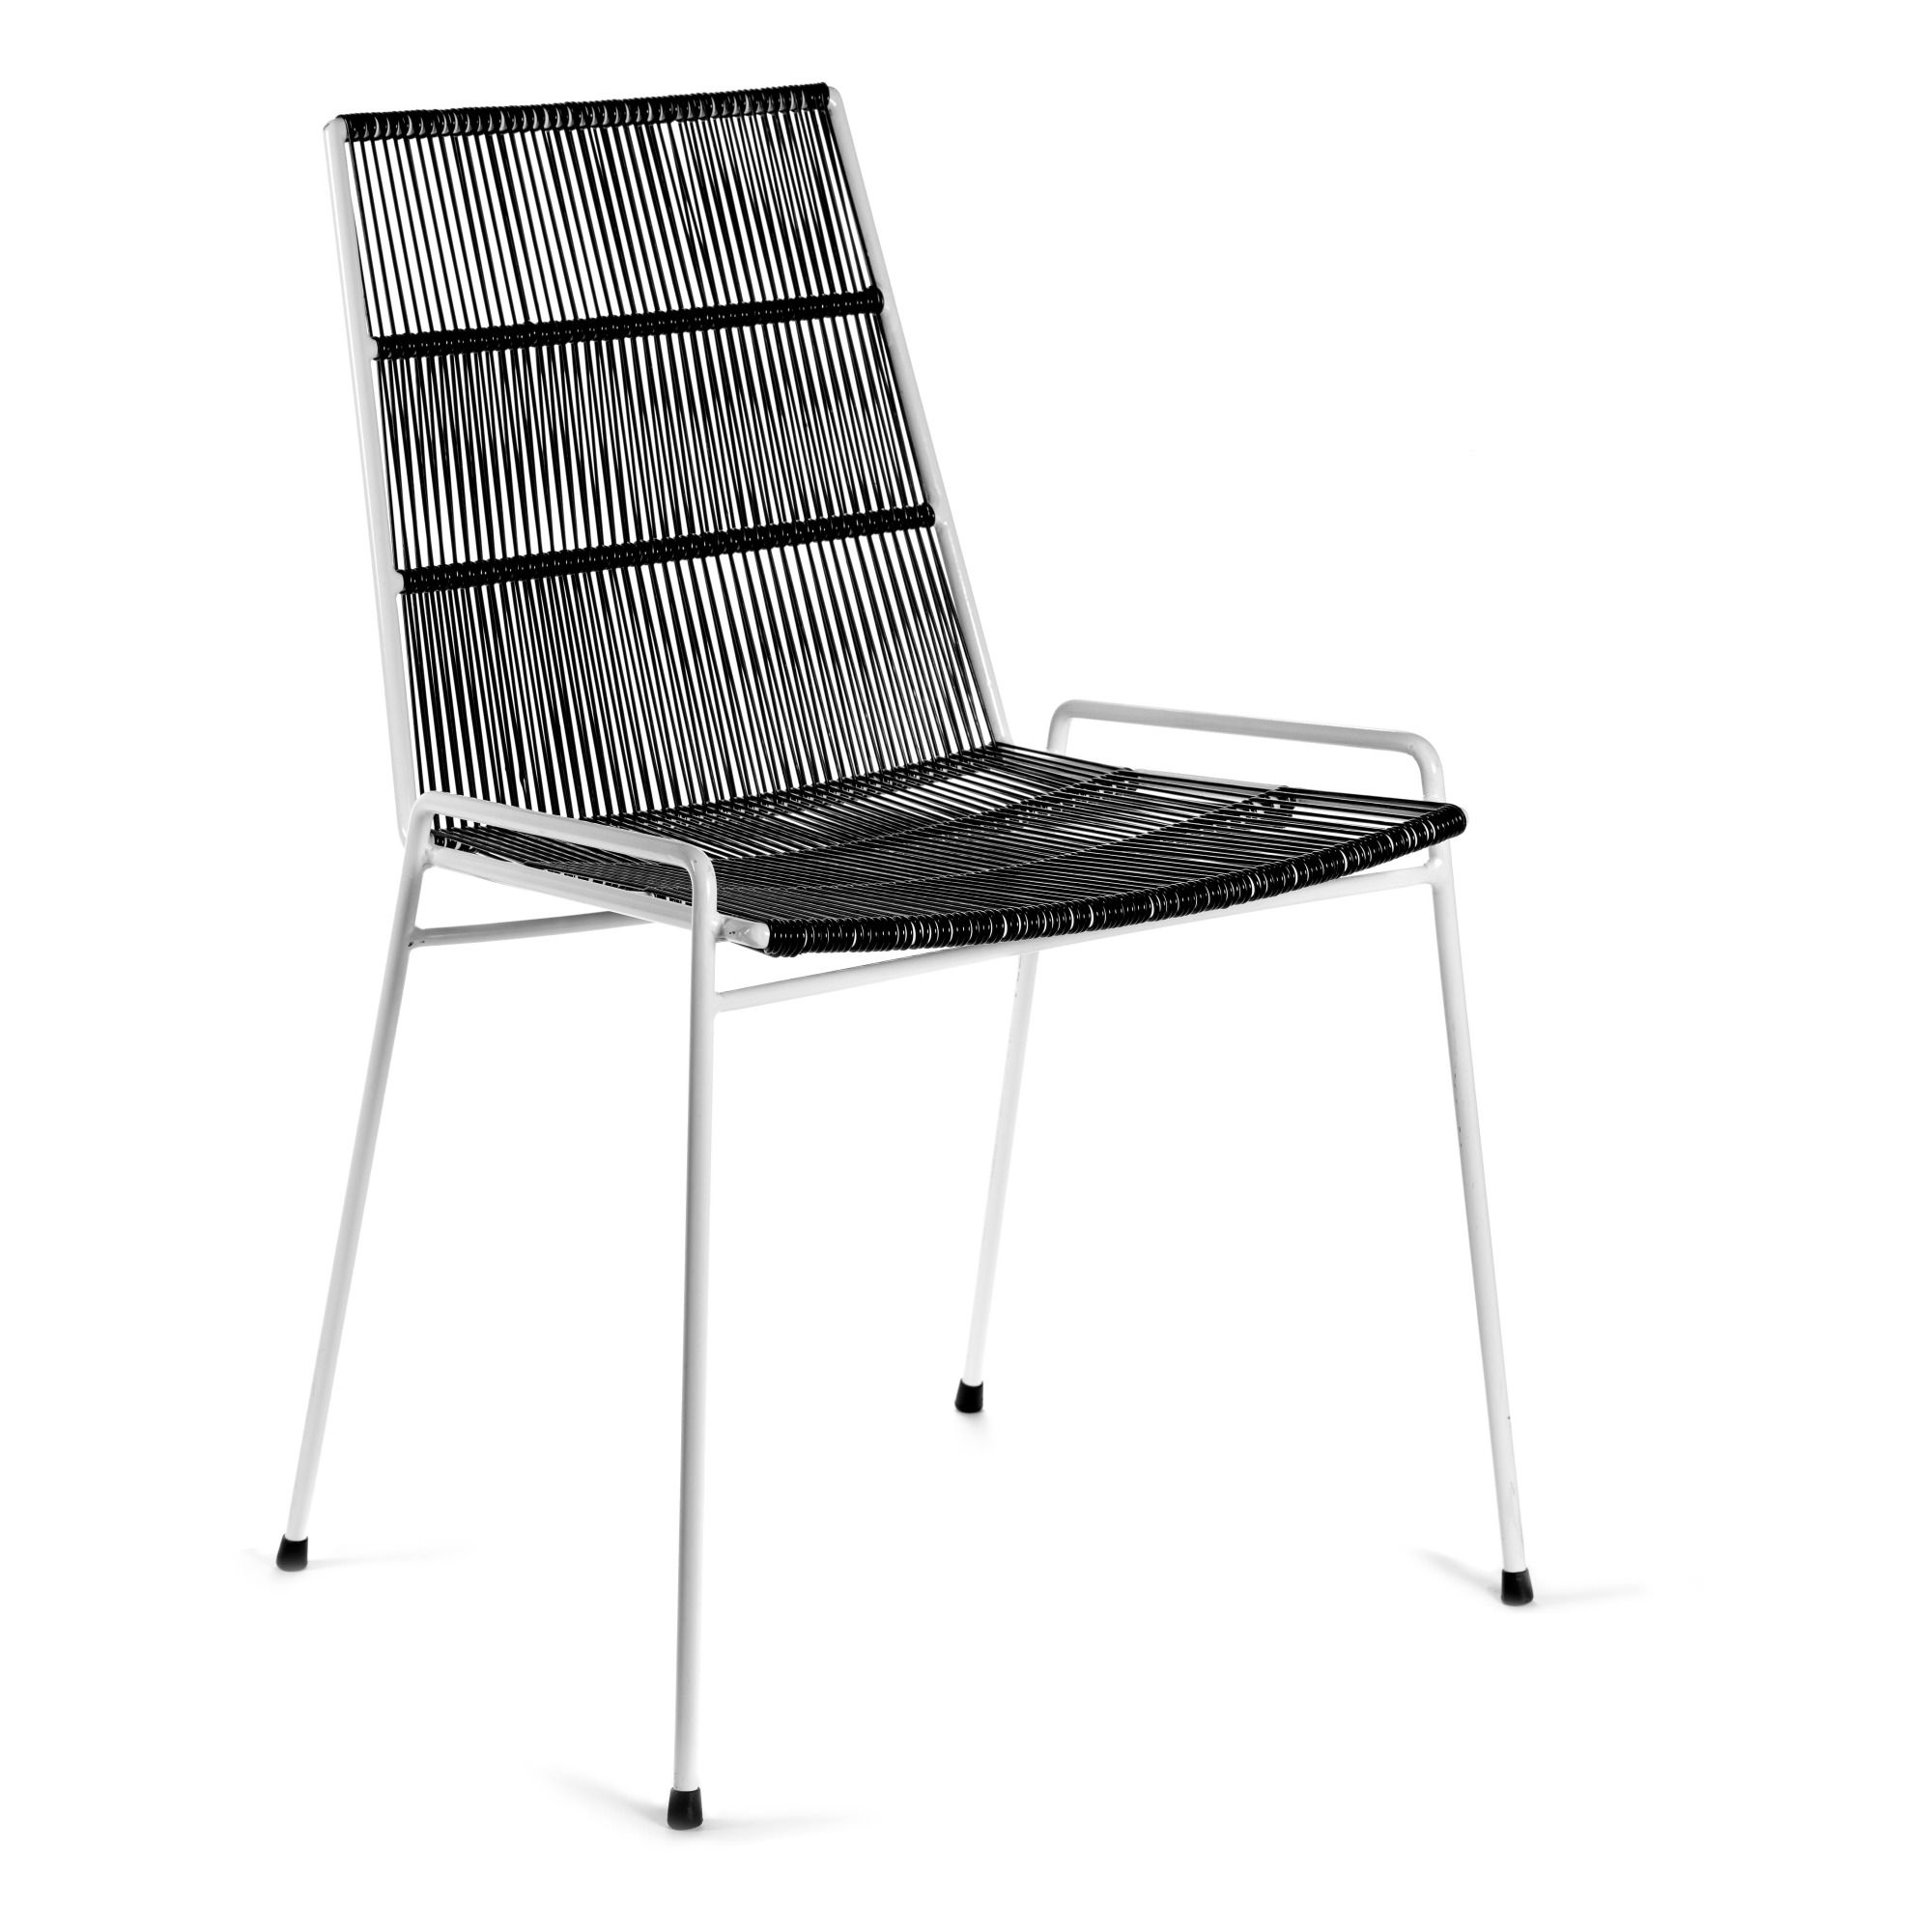 Serax - Chaise abaco en métal - Noir